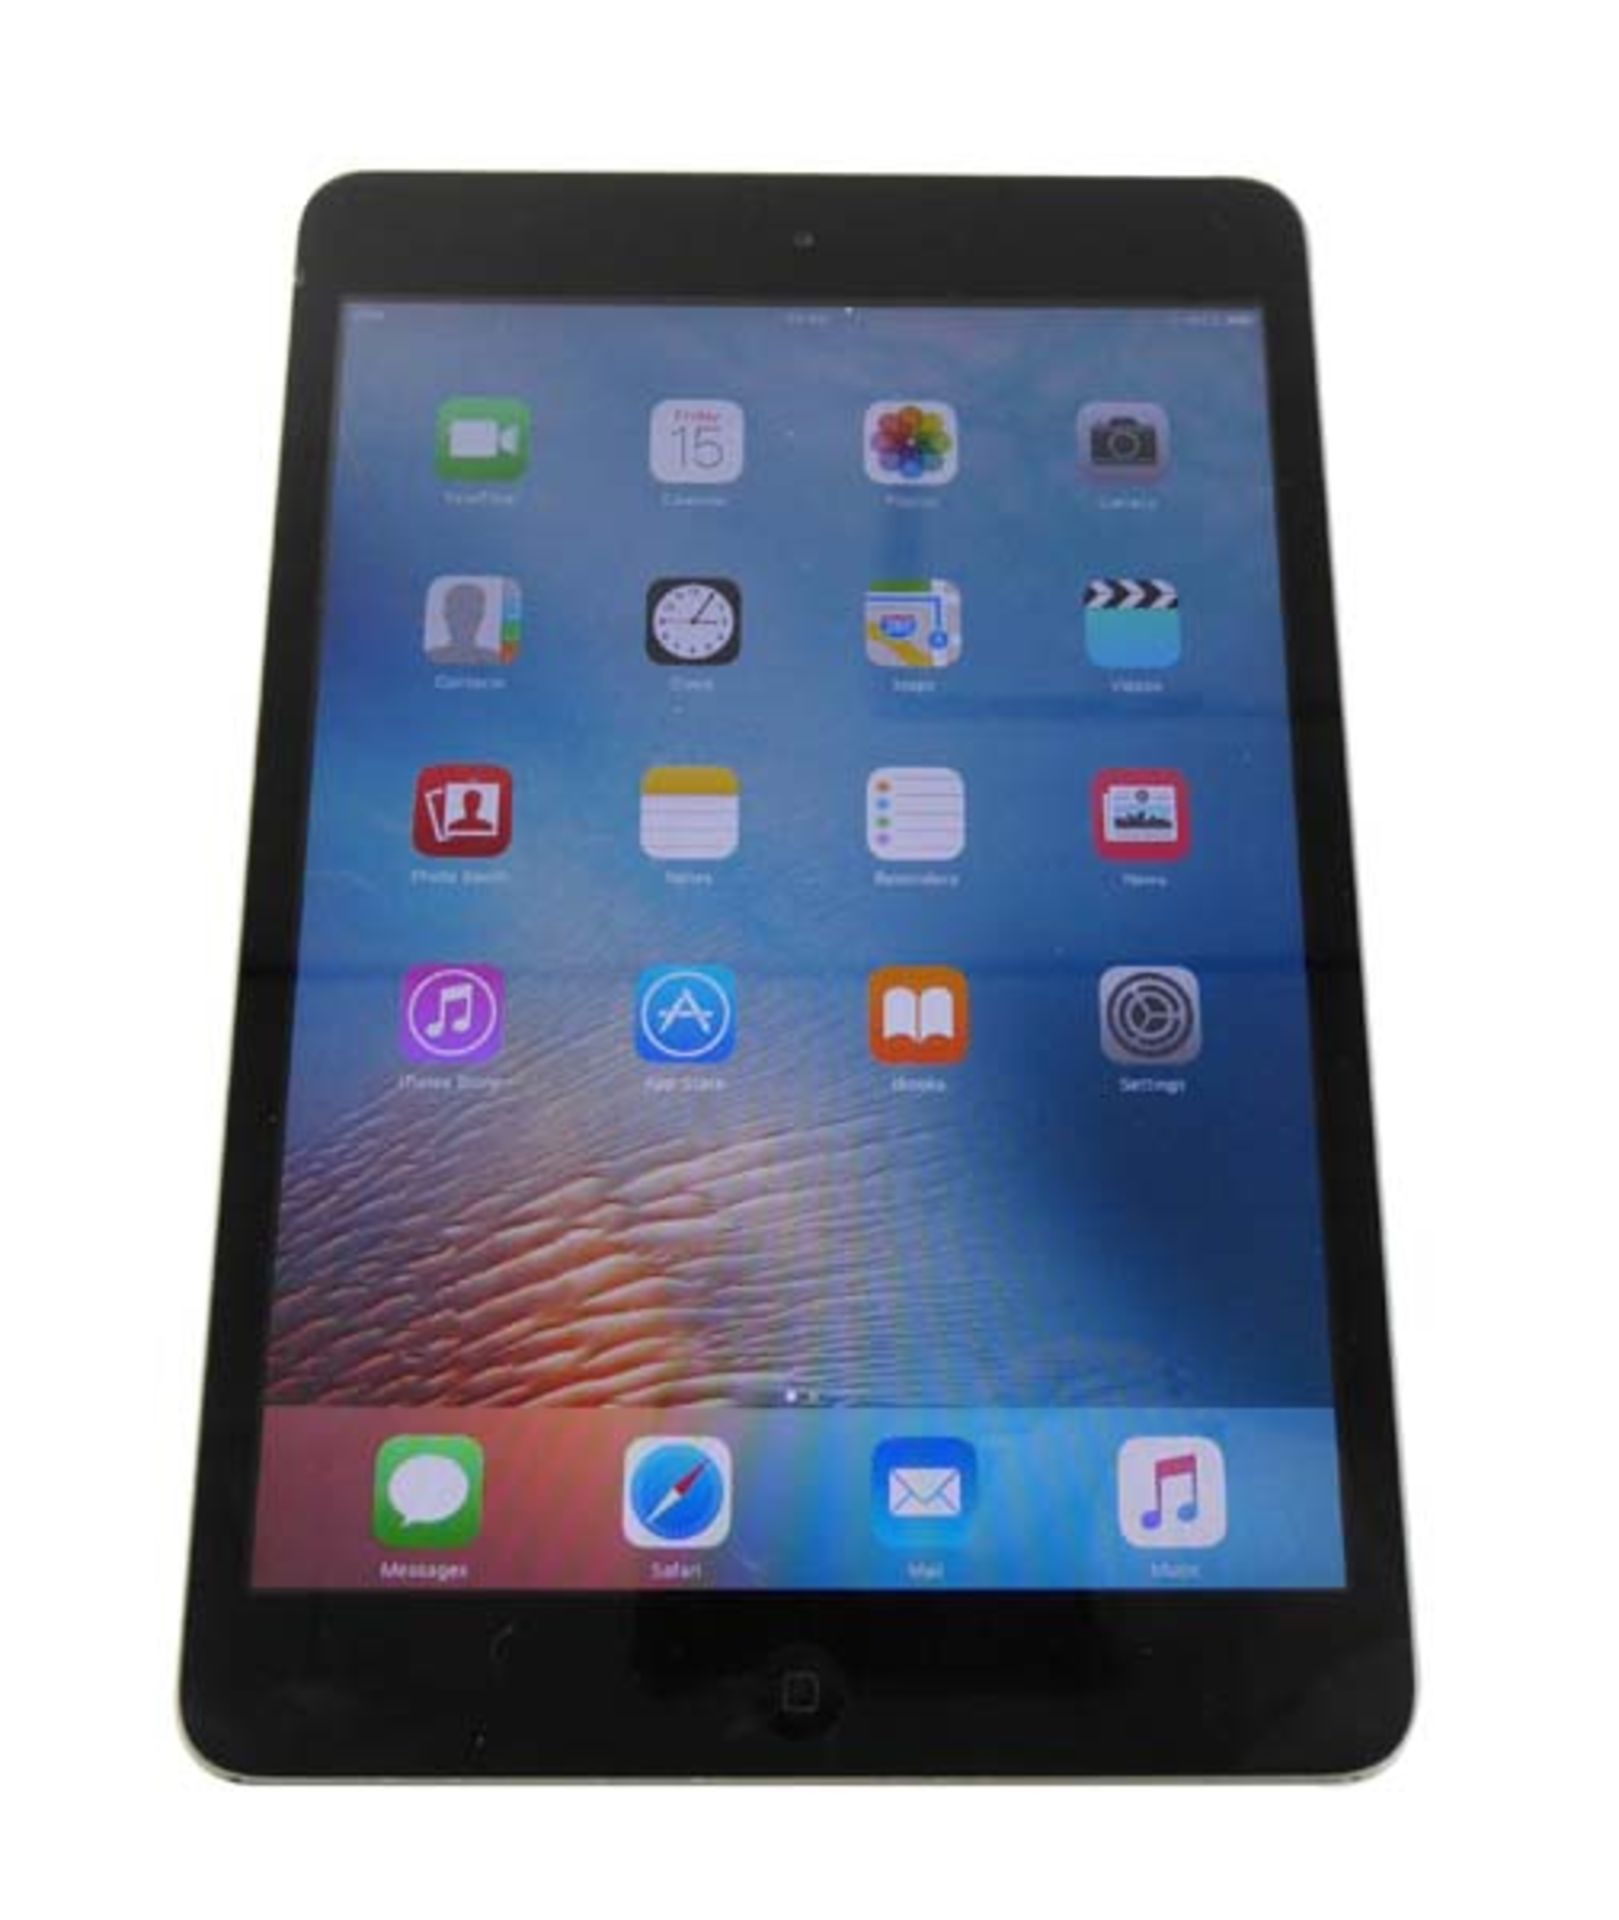 iPad Mini 16GB Space Grey with box (A1432 2012)